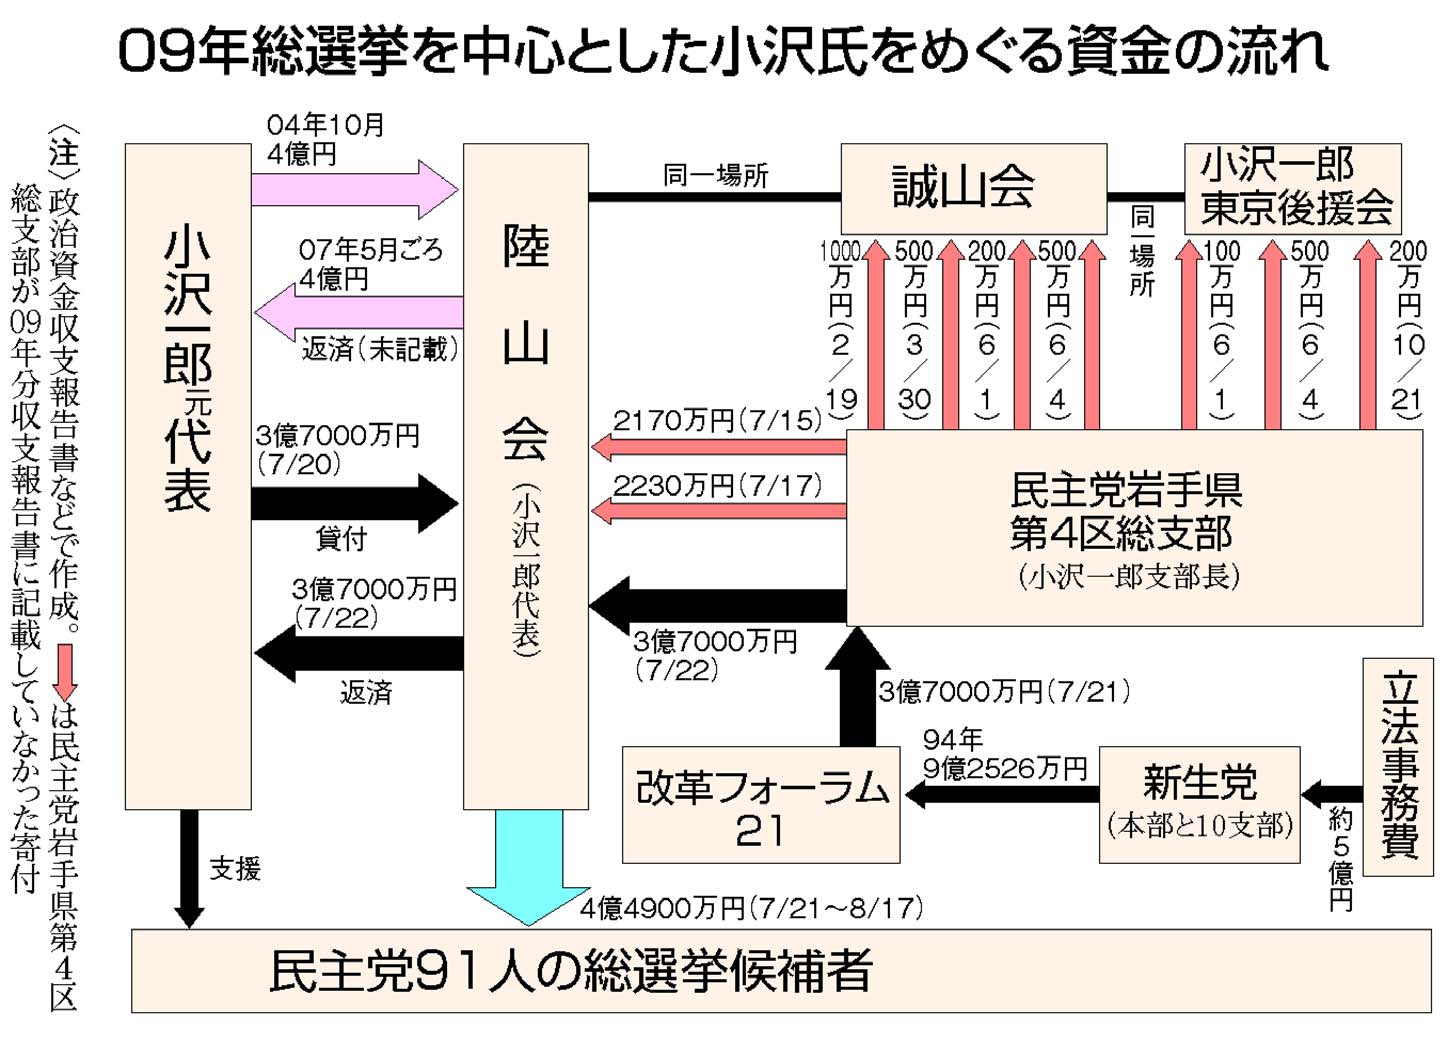 図:09年総選挙を中心とした小沢氏をめぐる資金の流れ